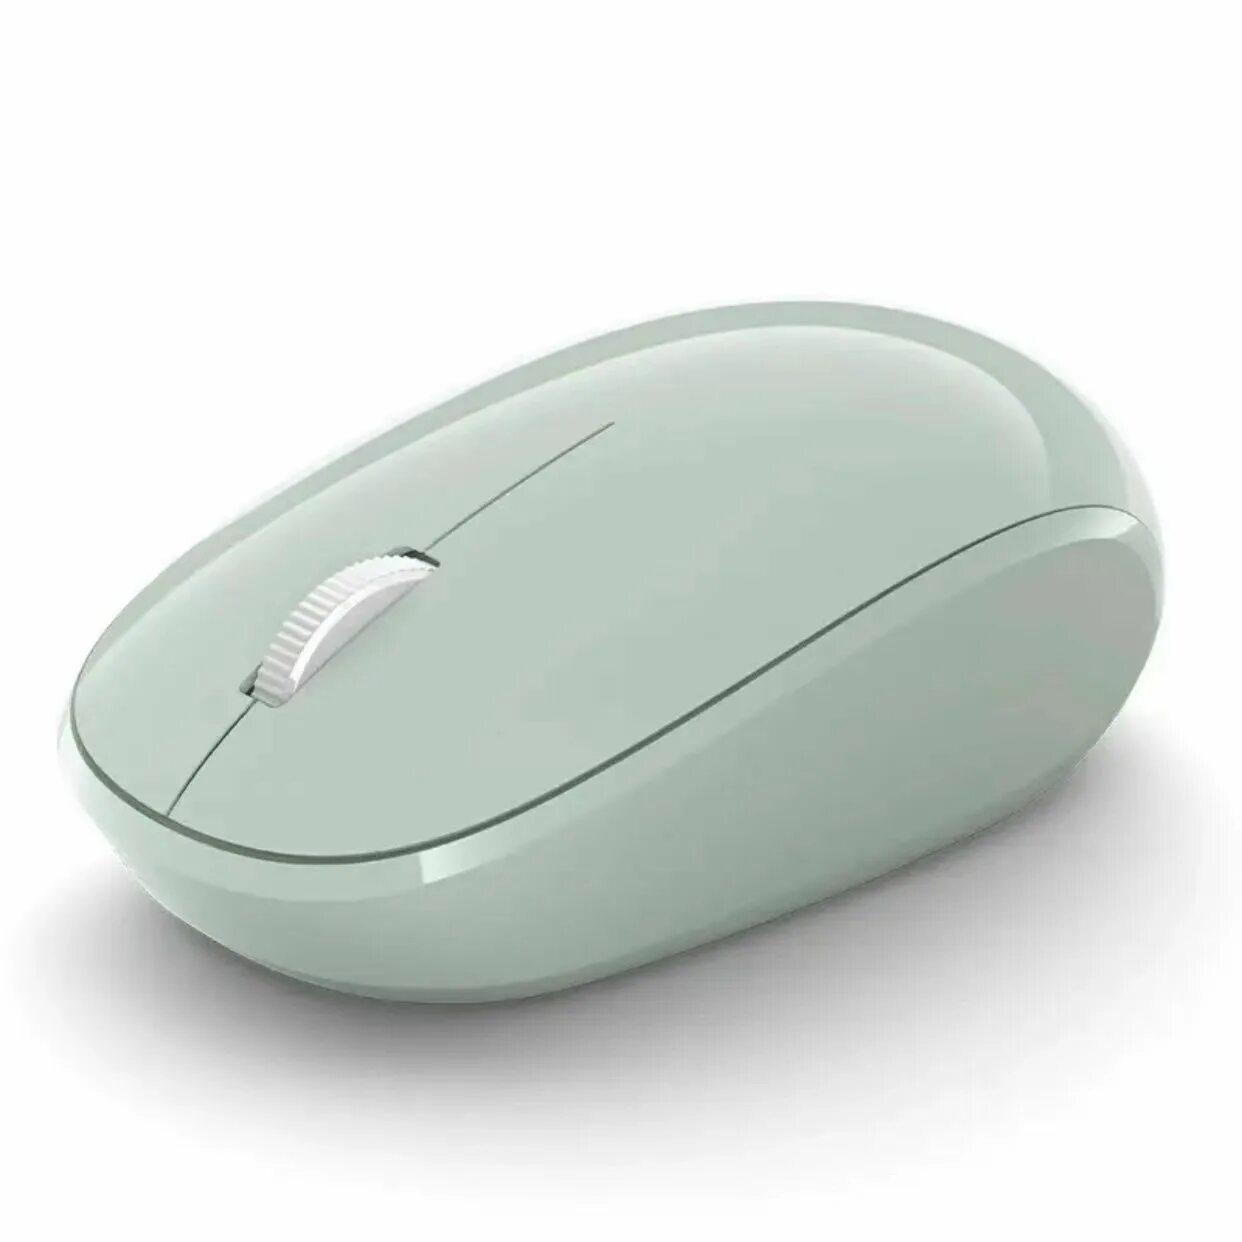 Купить bluetooth мышь. Мышь беспроводная Microsoft Bluetooth. Беспроводная мышь Microsoft Ergonomic Mouse Bluetooth. Мышь беспроводная Microsoft Bluetooth Pastel Blue. Мышь Microsoft Bluetooth, оптическая, беспроводная, черный [RJN-00010].